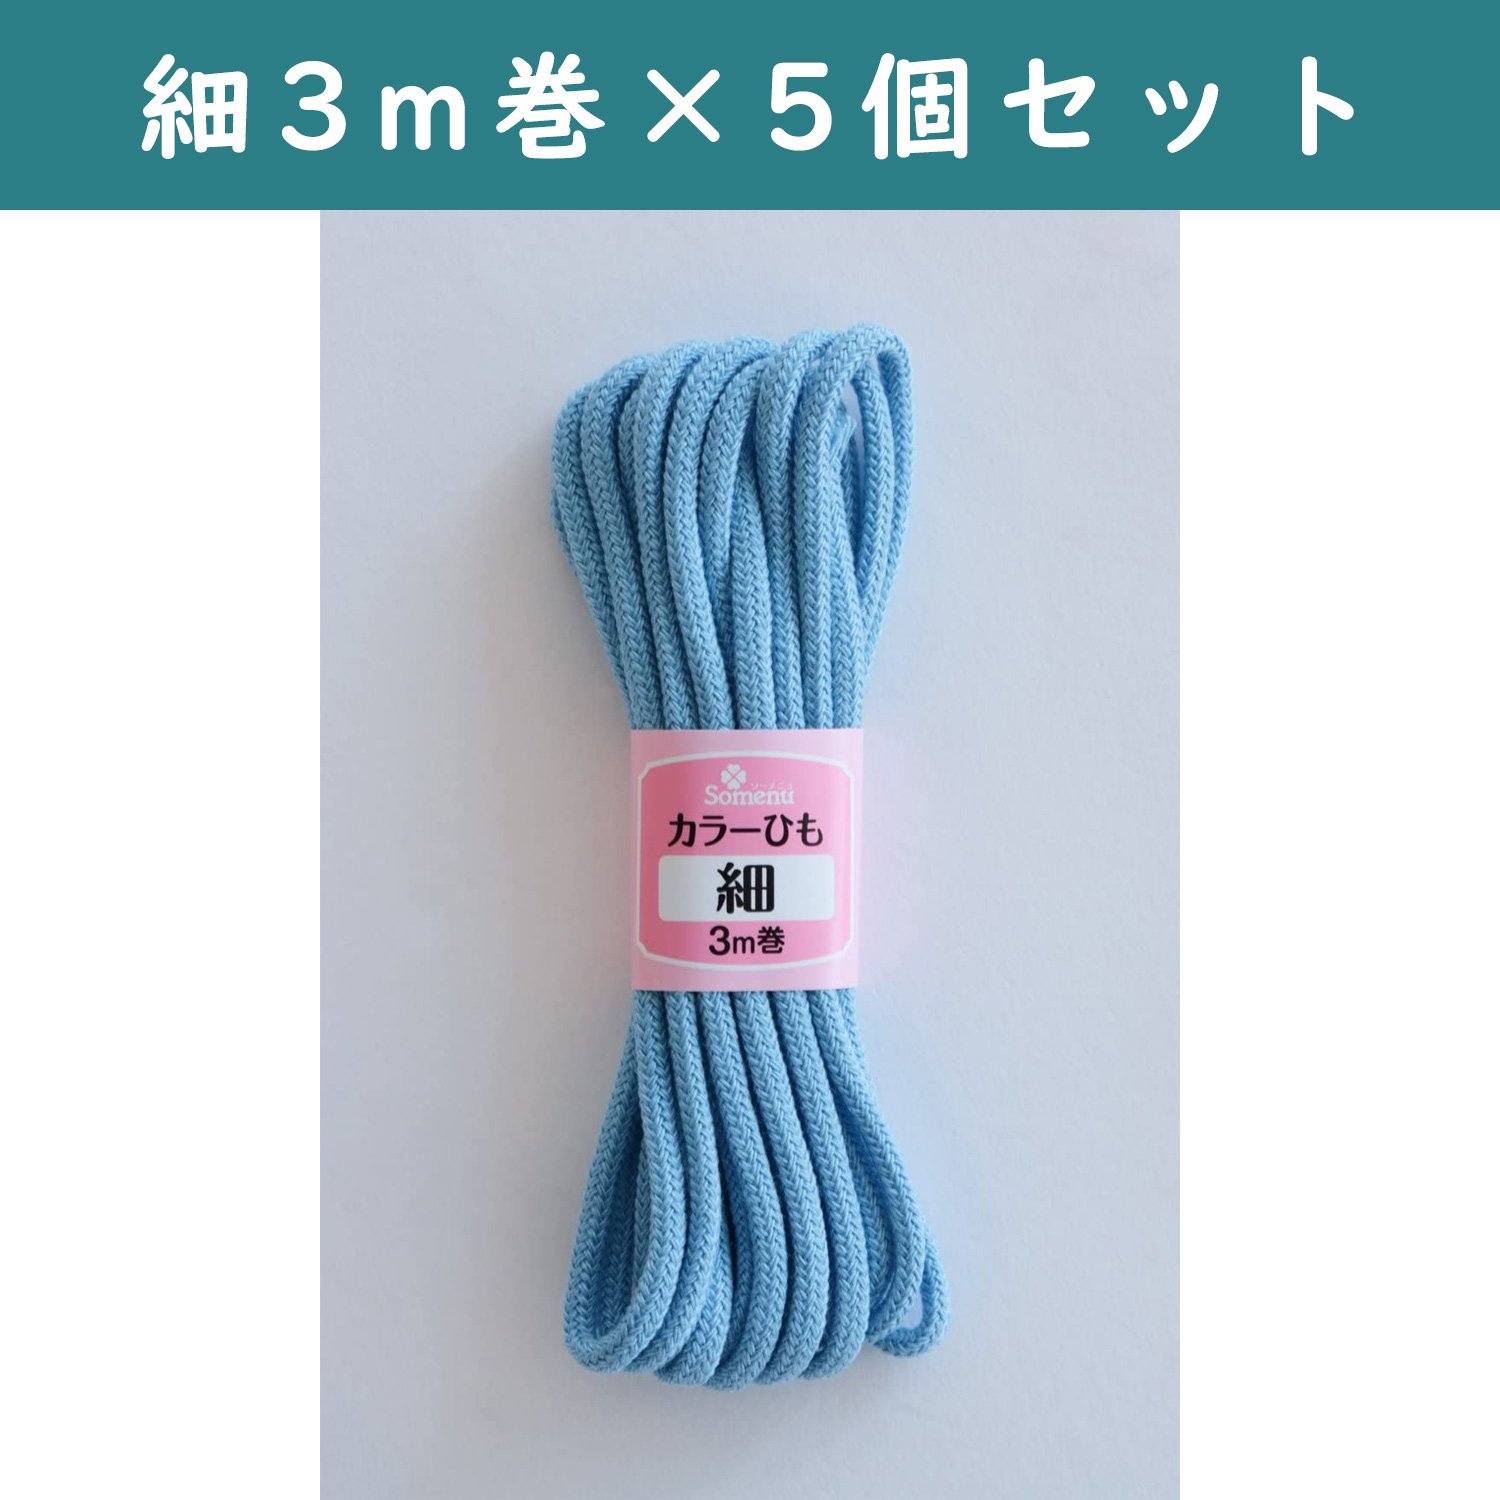 ■【5個】CL26-138-5set カラーひも 細 3m巻 ブルー 5個セット (セット)